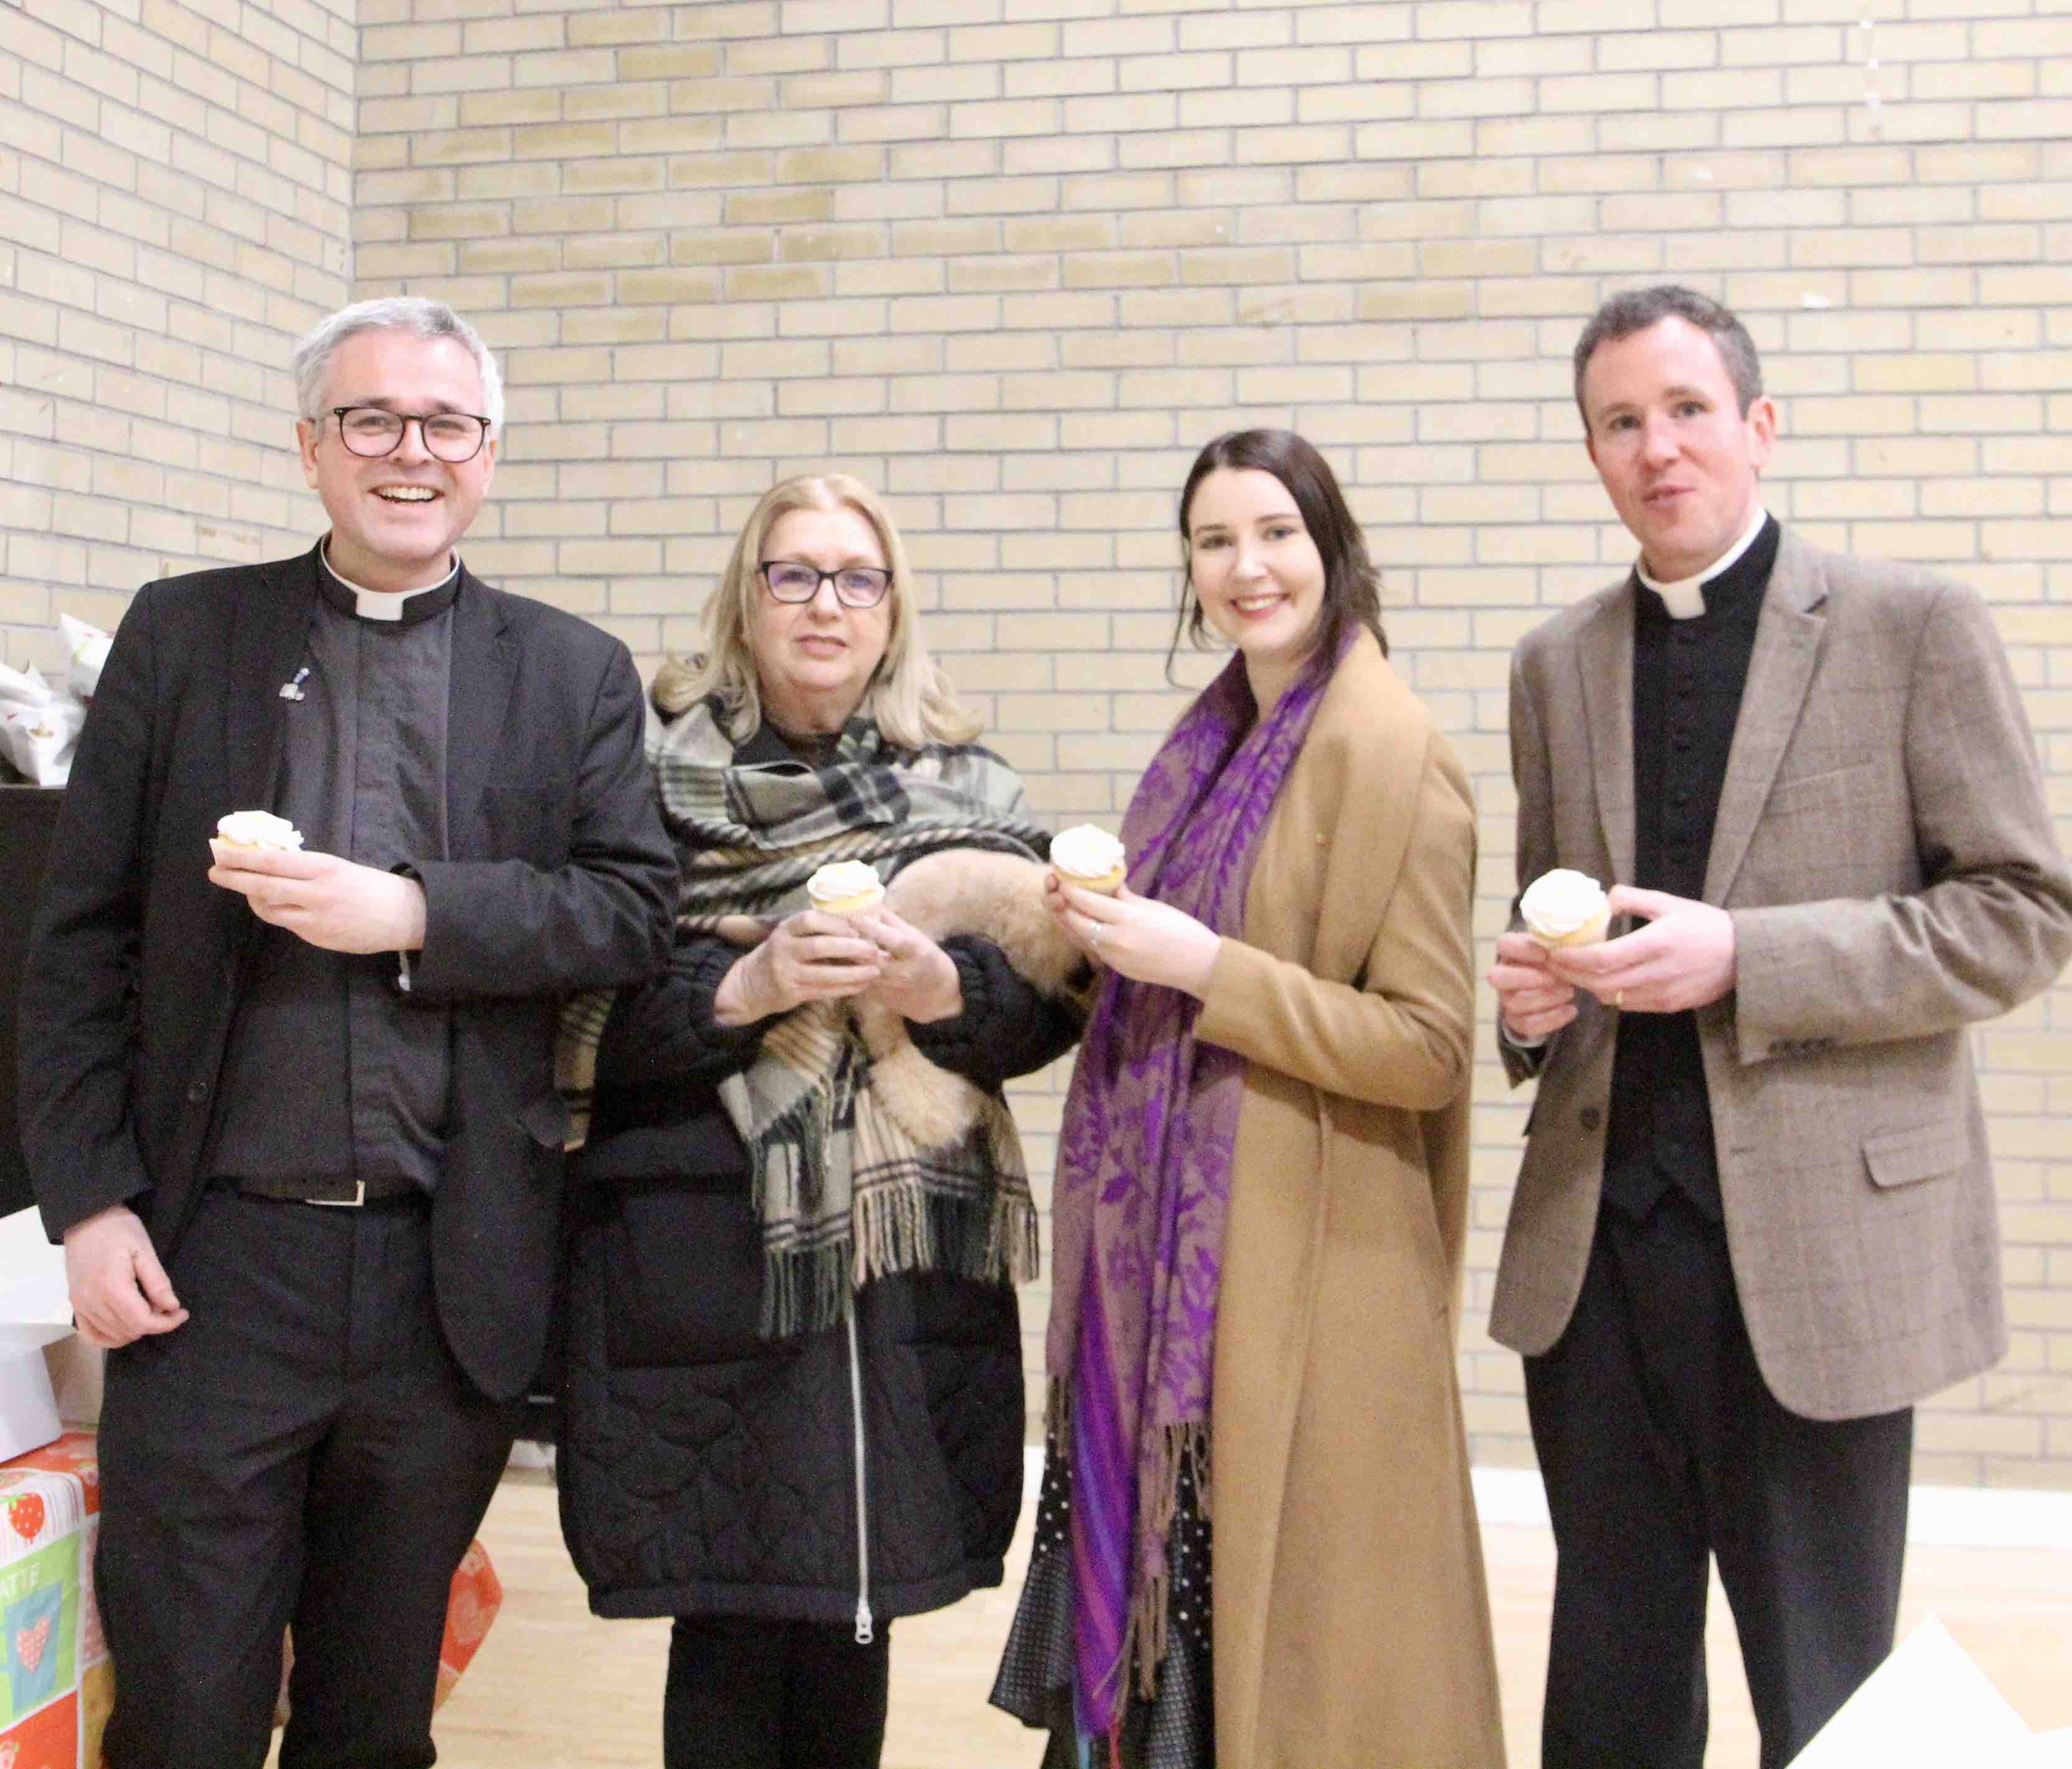 Canon Paul Arbuthnot, Mary McAleese, Caoimhe Leppard and the Revd Sean Hanily.